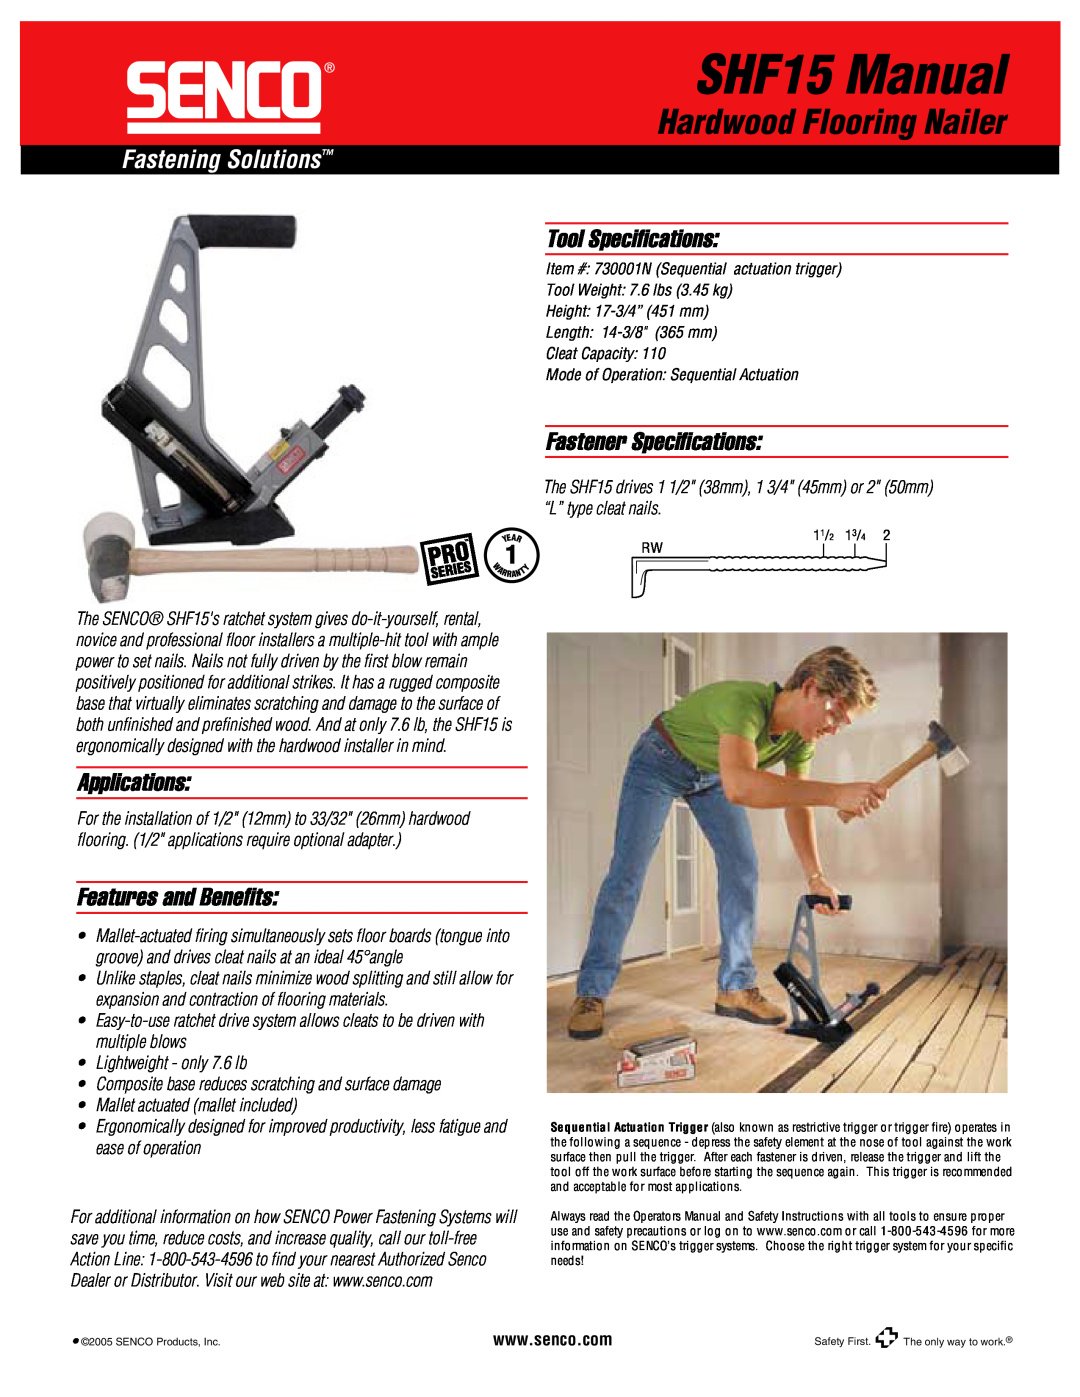 Senco specifications SHF15 Manual, Hardwood Flooring Nailer, Fastening Solutions, Tool Speciﬁcations, Applications 